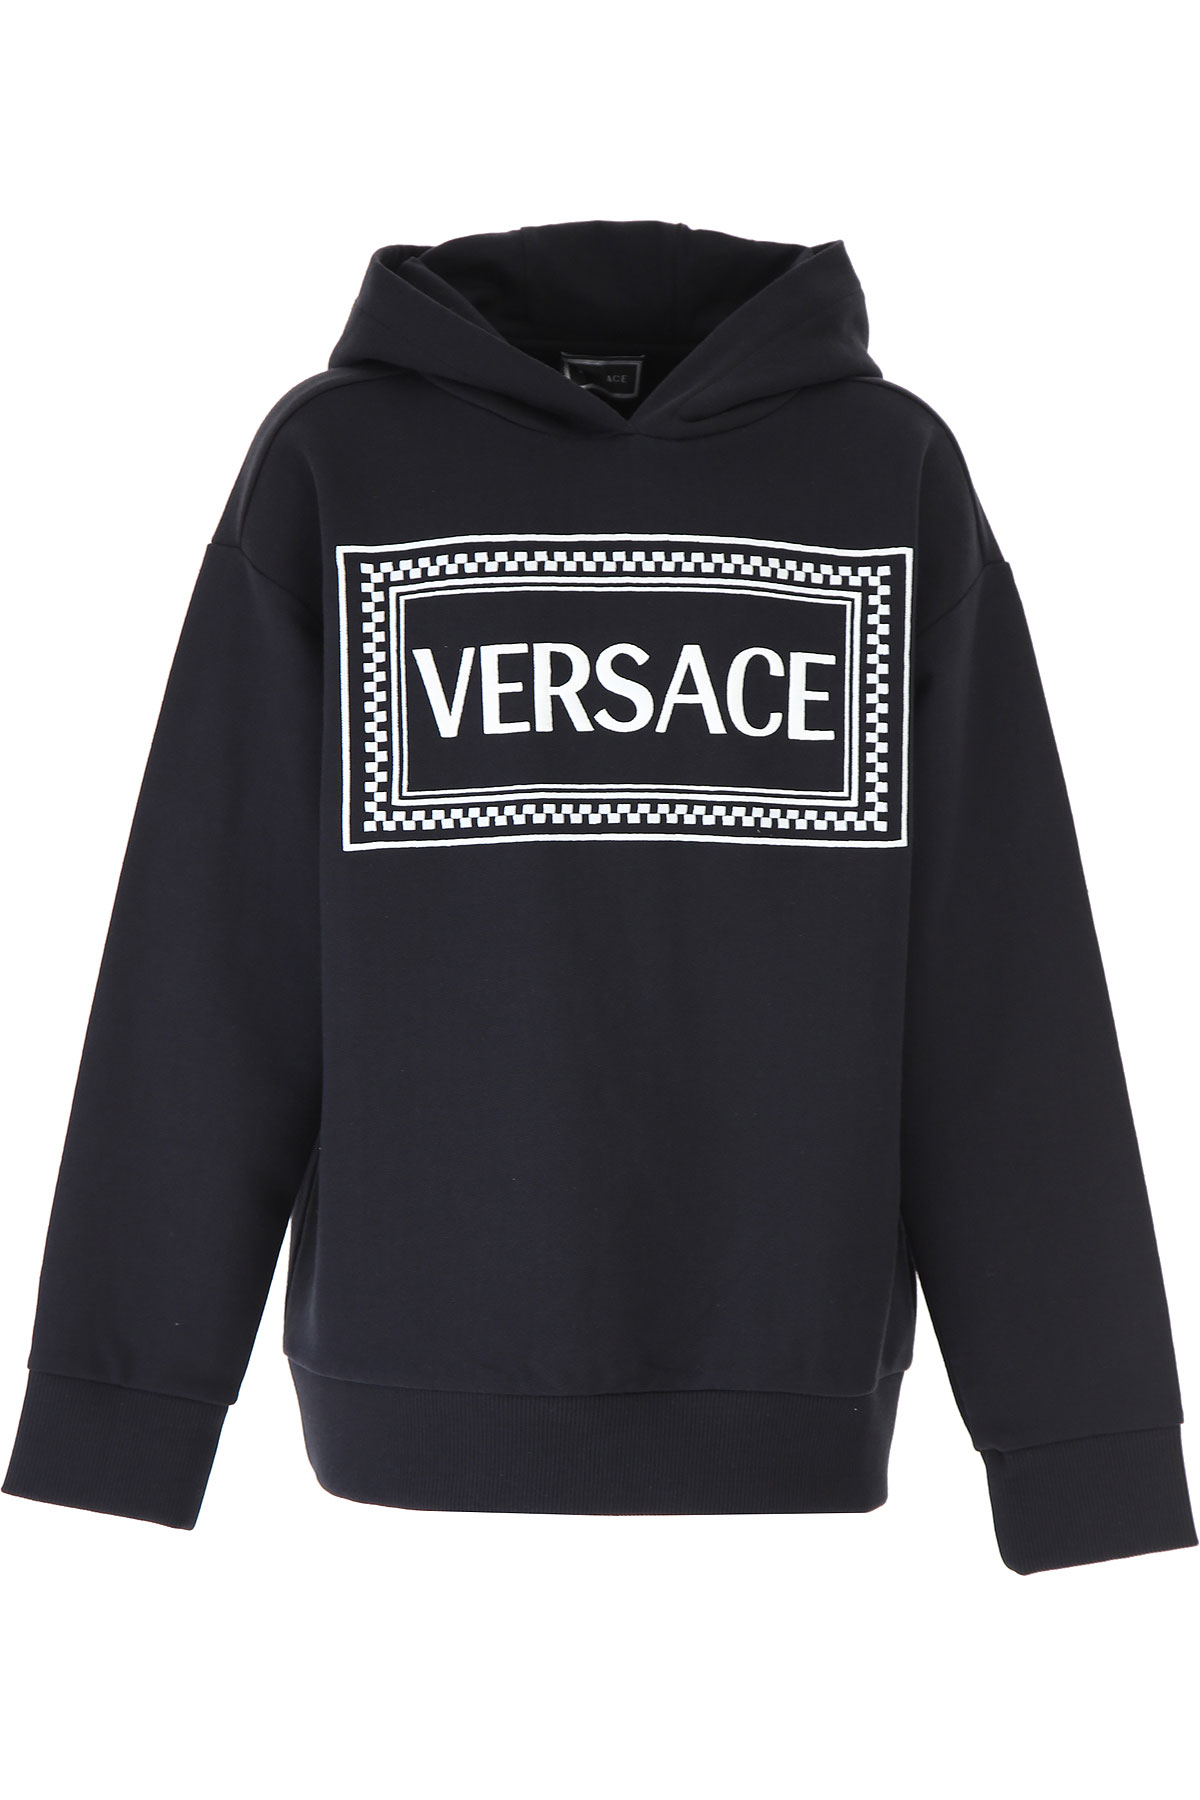 Versace Kinder Sweatshirt & Kapuzenpullover für Jungen Günstig im Sale, Schwarz, Baumwolle, 2017, 10Y 8Y